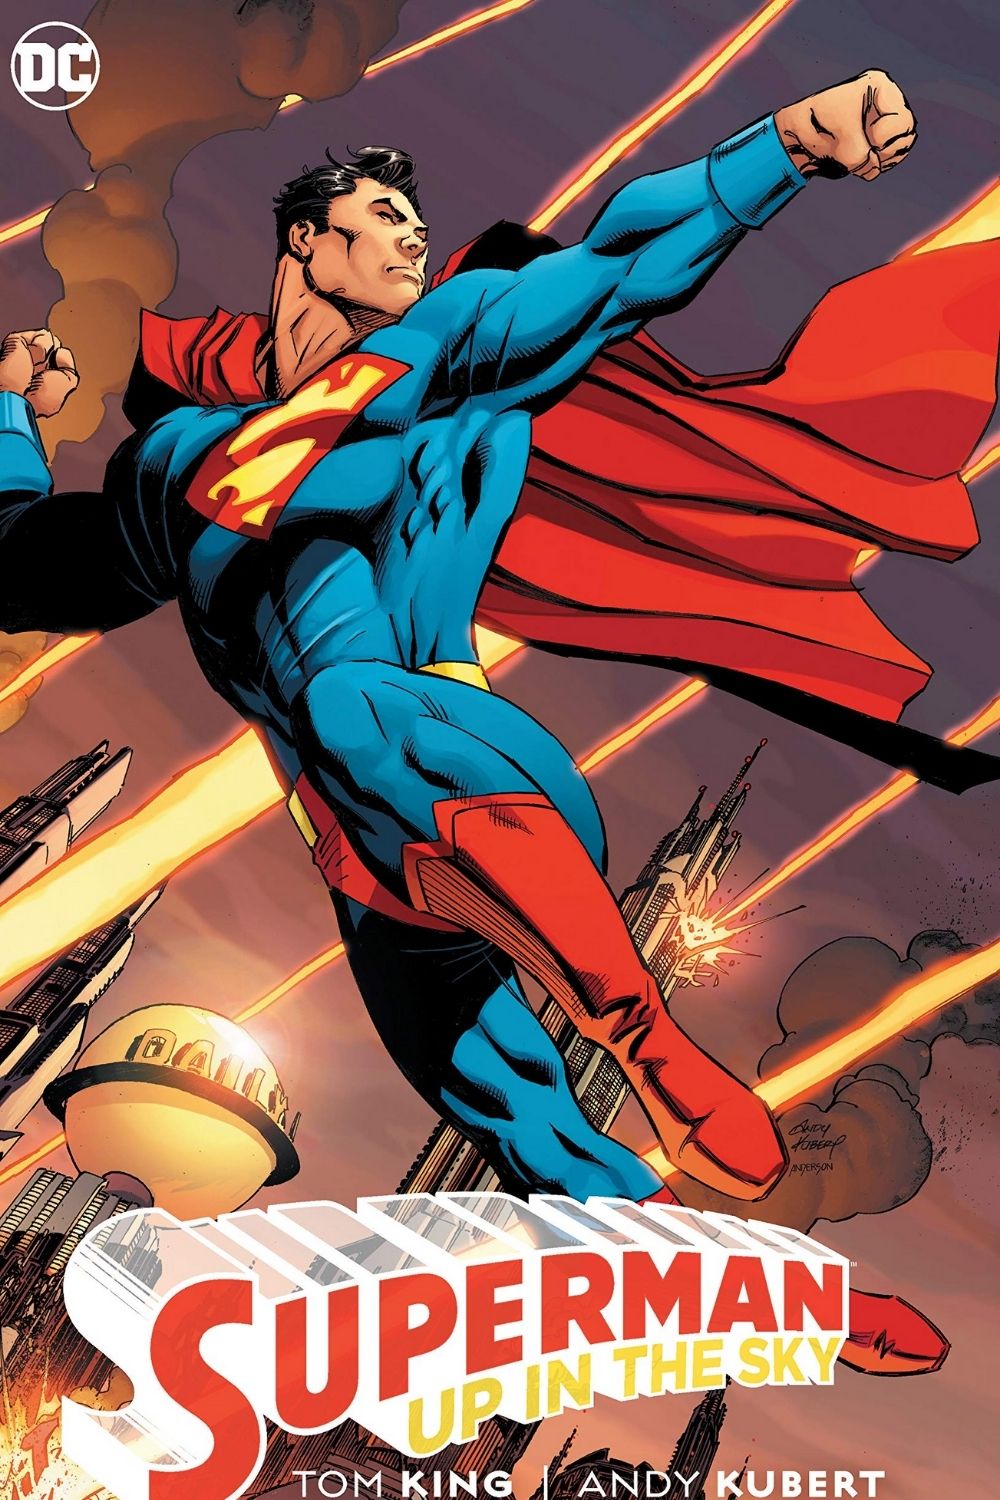 डीसी कॉमिक्स (सुपरमैन) के 10 सबसे मजबूत पात्र